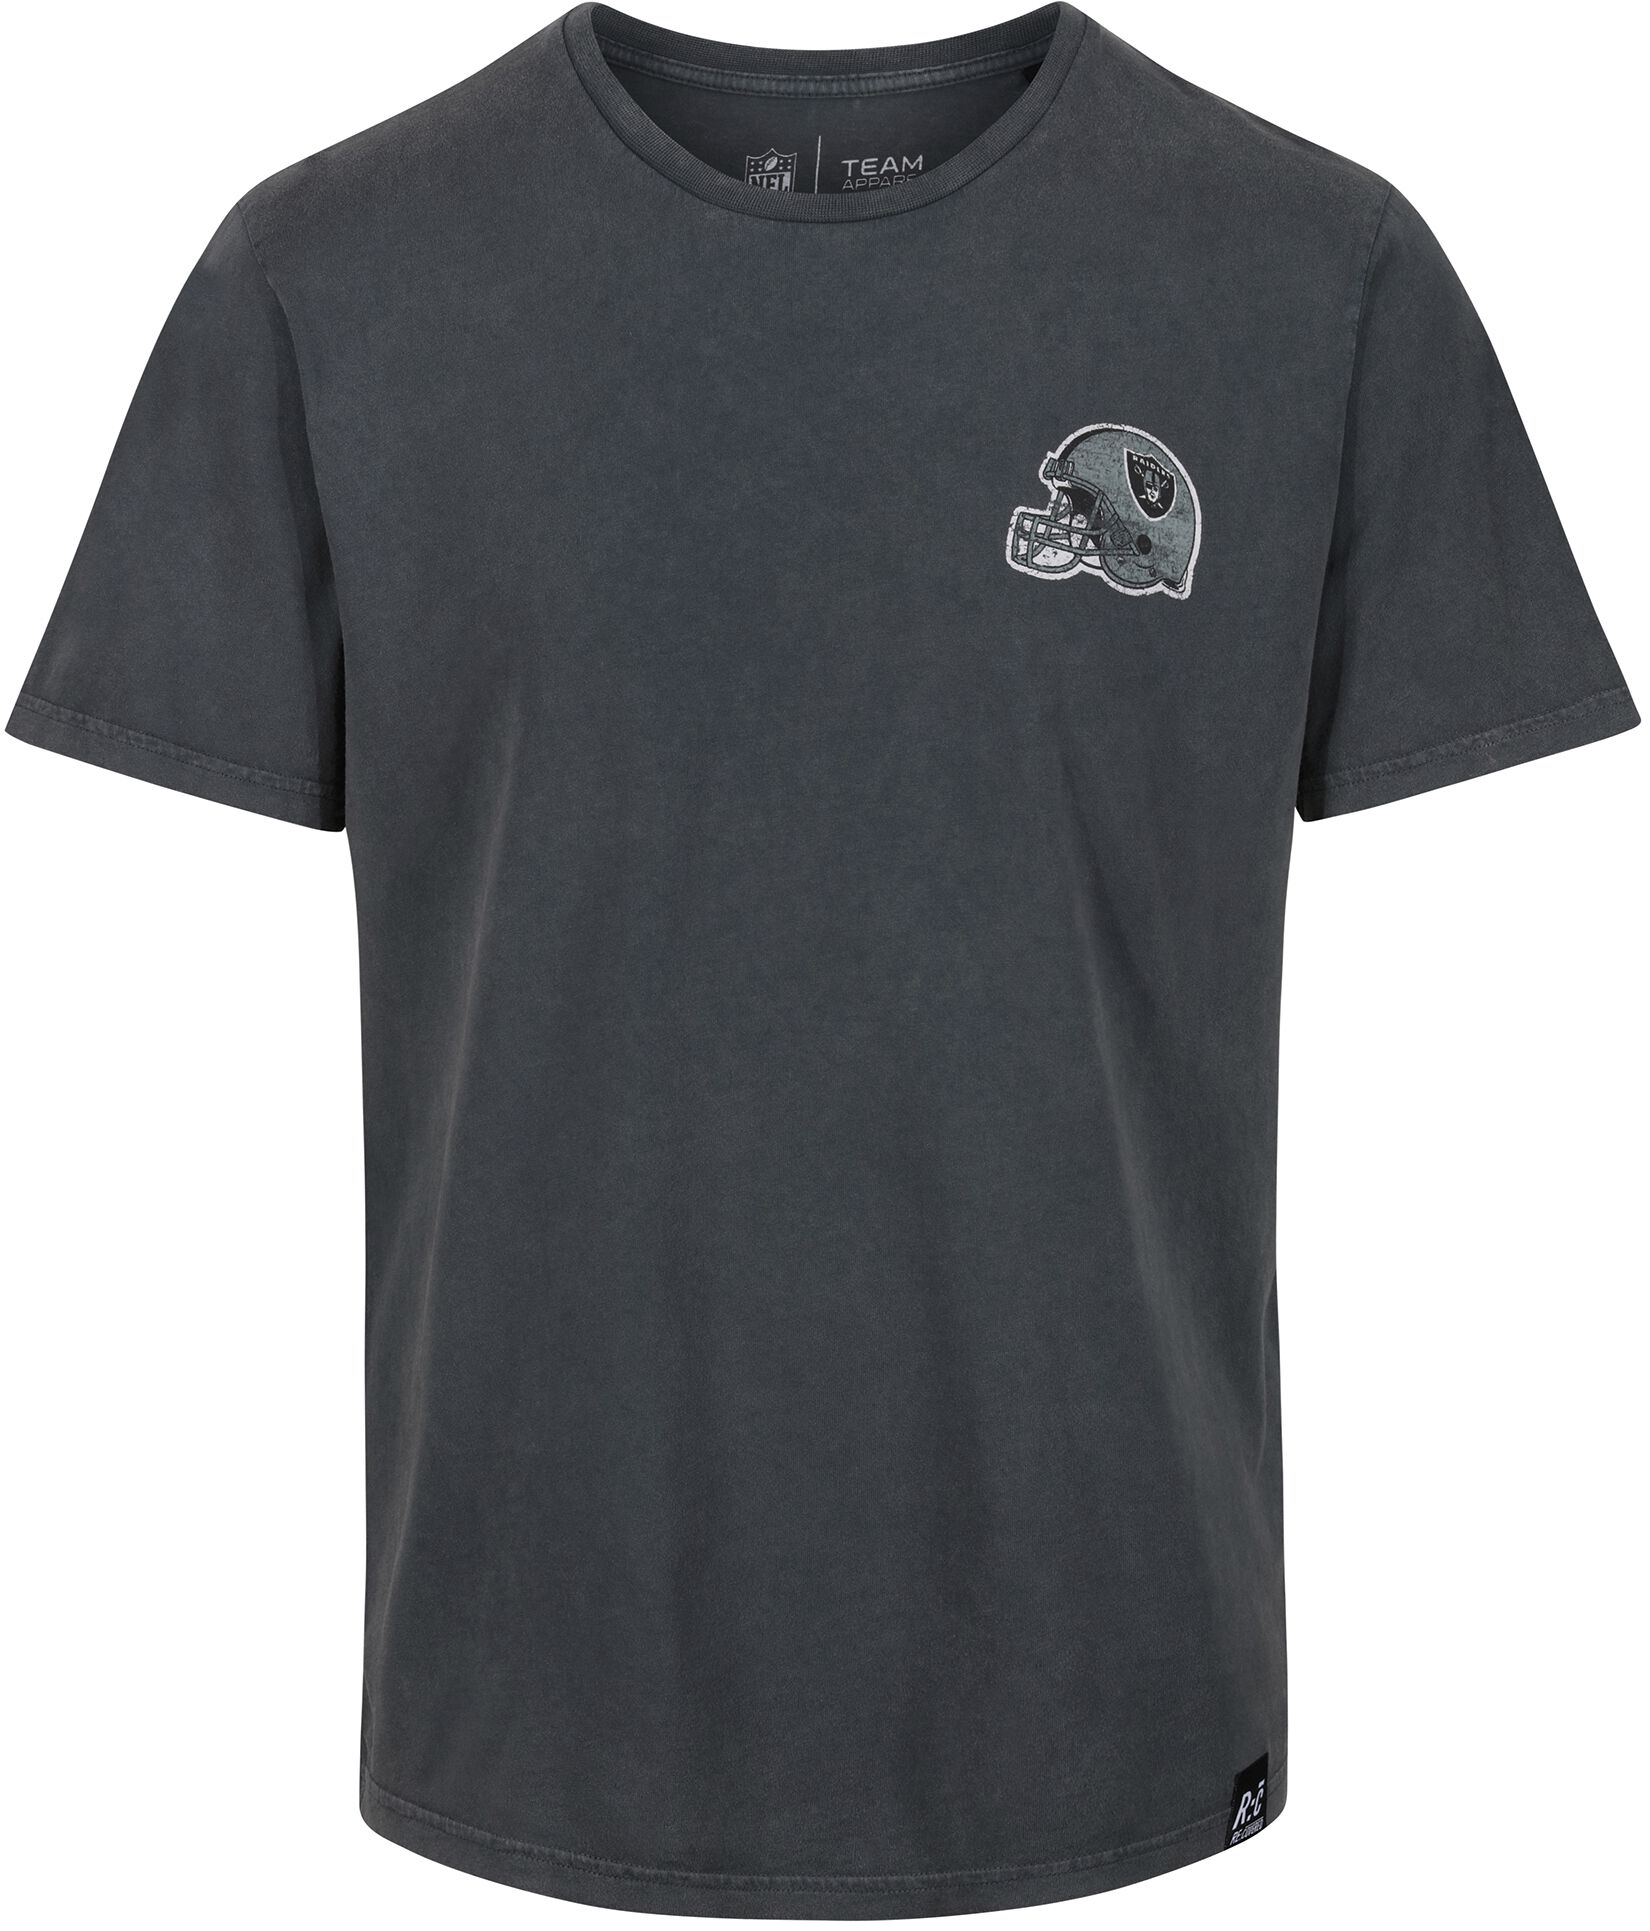 Recovered Clothing T-Shirt - NFL Raiders College Black Washed - S bis XXL - für Männer - Größe XXL - multicolor